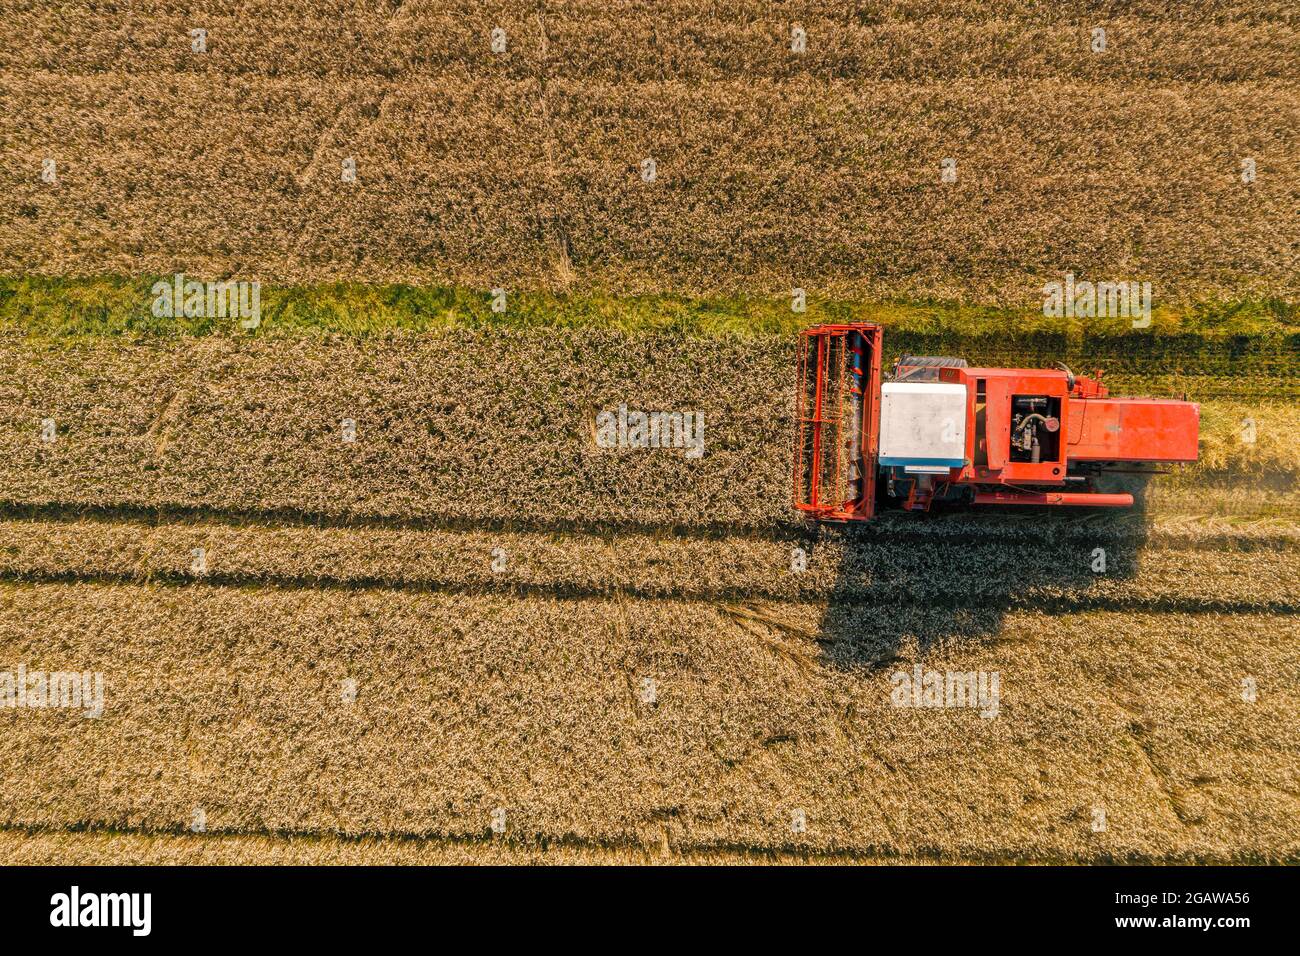 Drone la imagen de la cosechadora en el campo Foto de stock